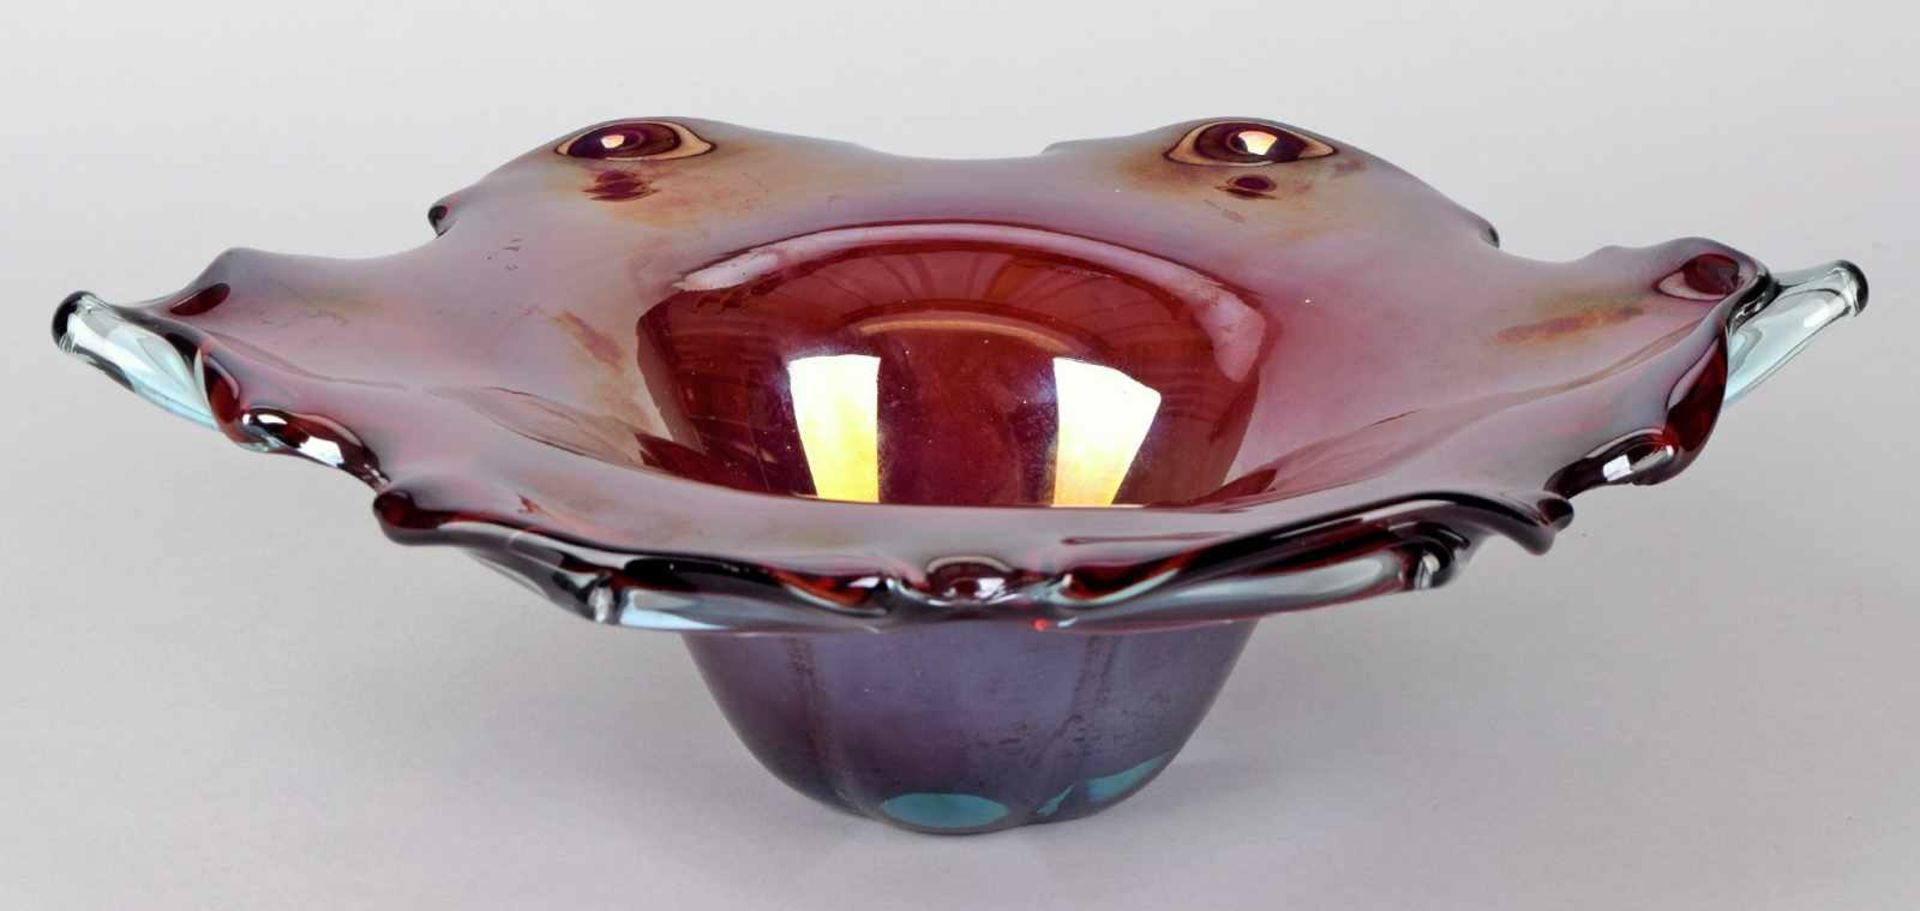 Zierschale Murano kirschrot eingefärbtes Glas mit plan geschliffenem Abriss, irisiert, tief - Bild 2 aus 2